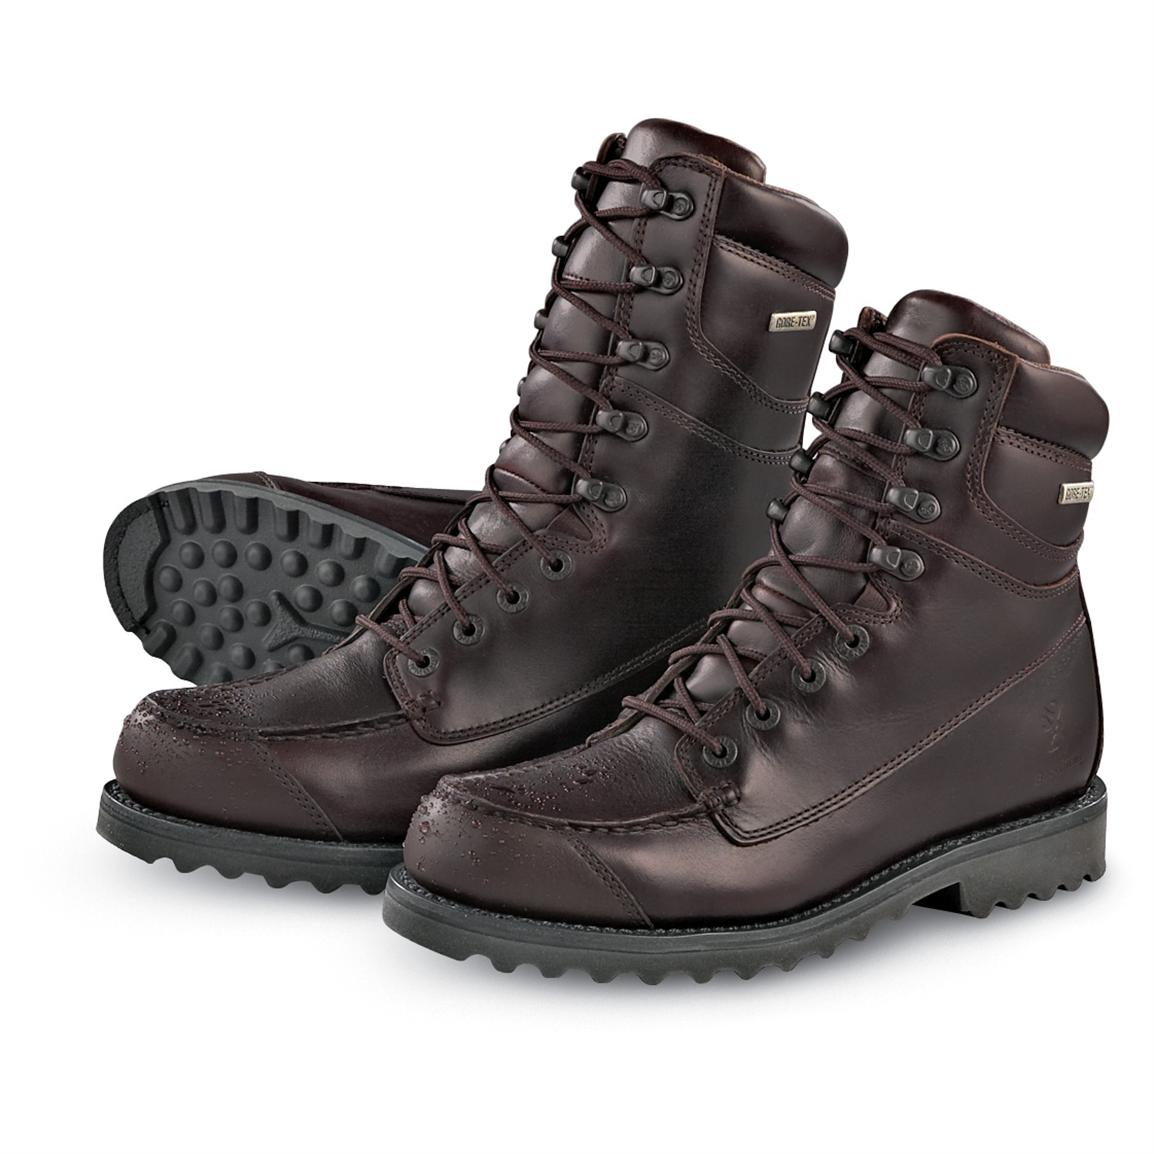 GORE - TEX® Moc - toe Boots, Brown 